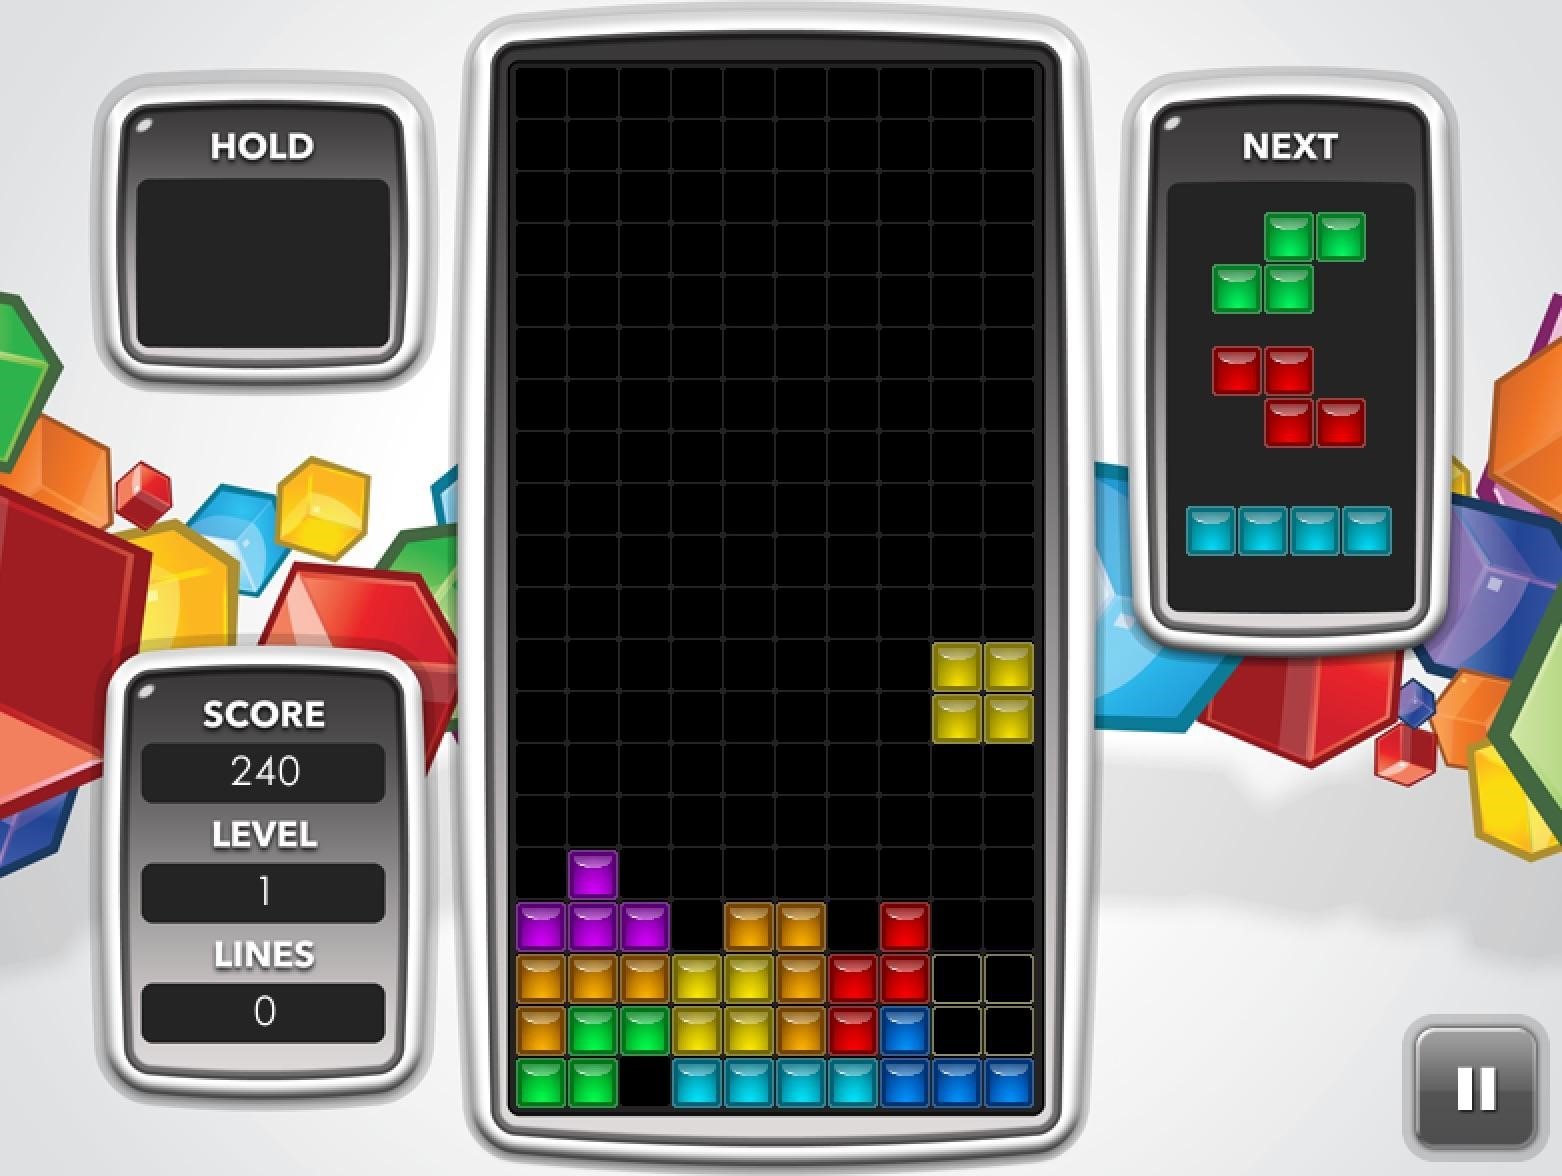 Tetris Tips for Beginners